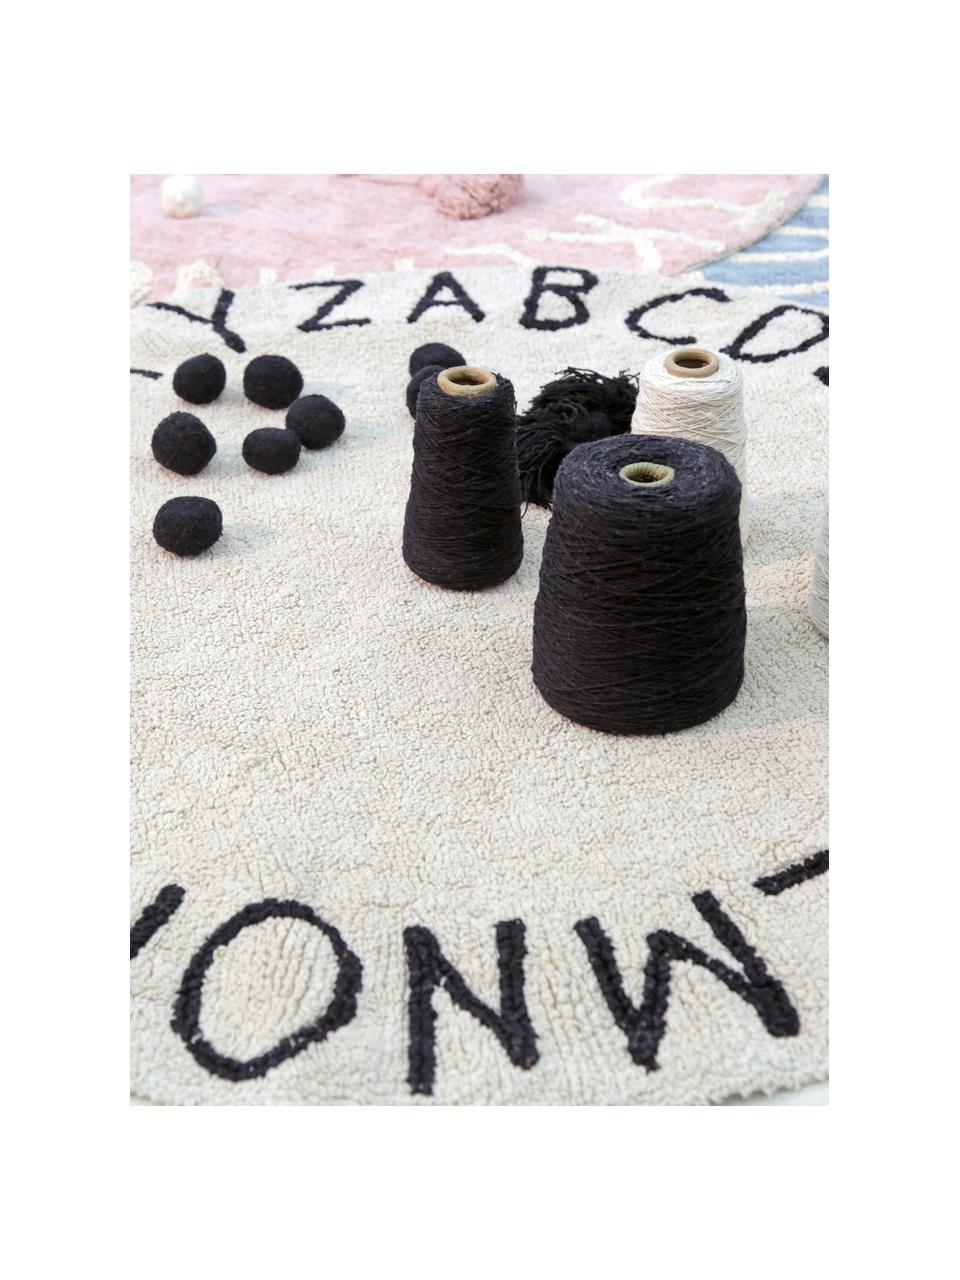 Runder Teppich ABC mit Buchstaben Design, Recycelte Baumwolle (80% Baumwolle, 20% andere Fasern), Hellbeige, Schwarz, Ø 150 cm (Größe M)